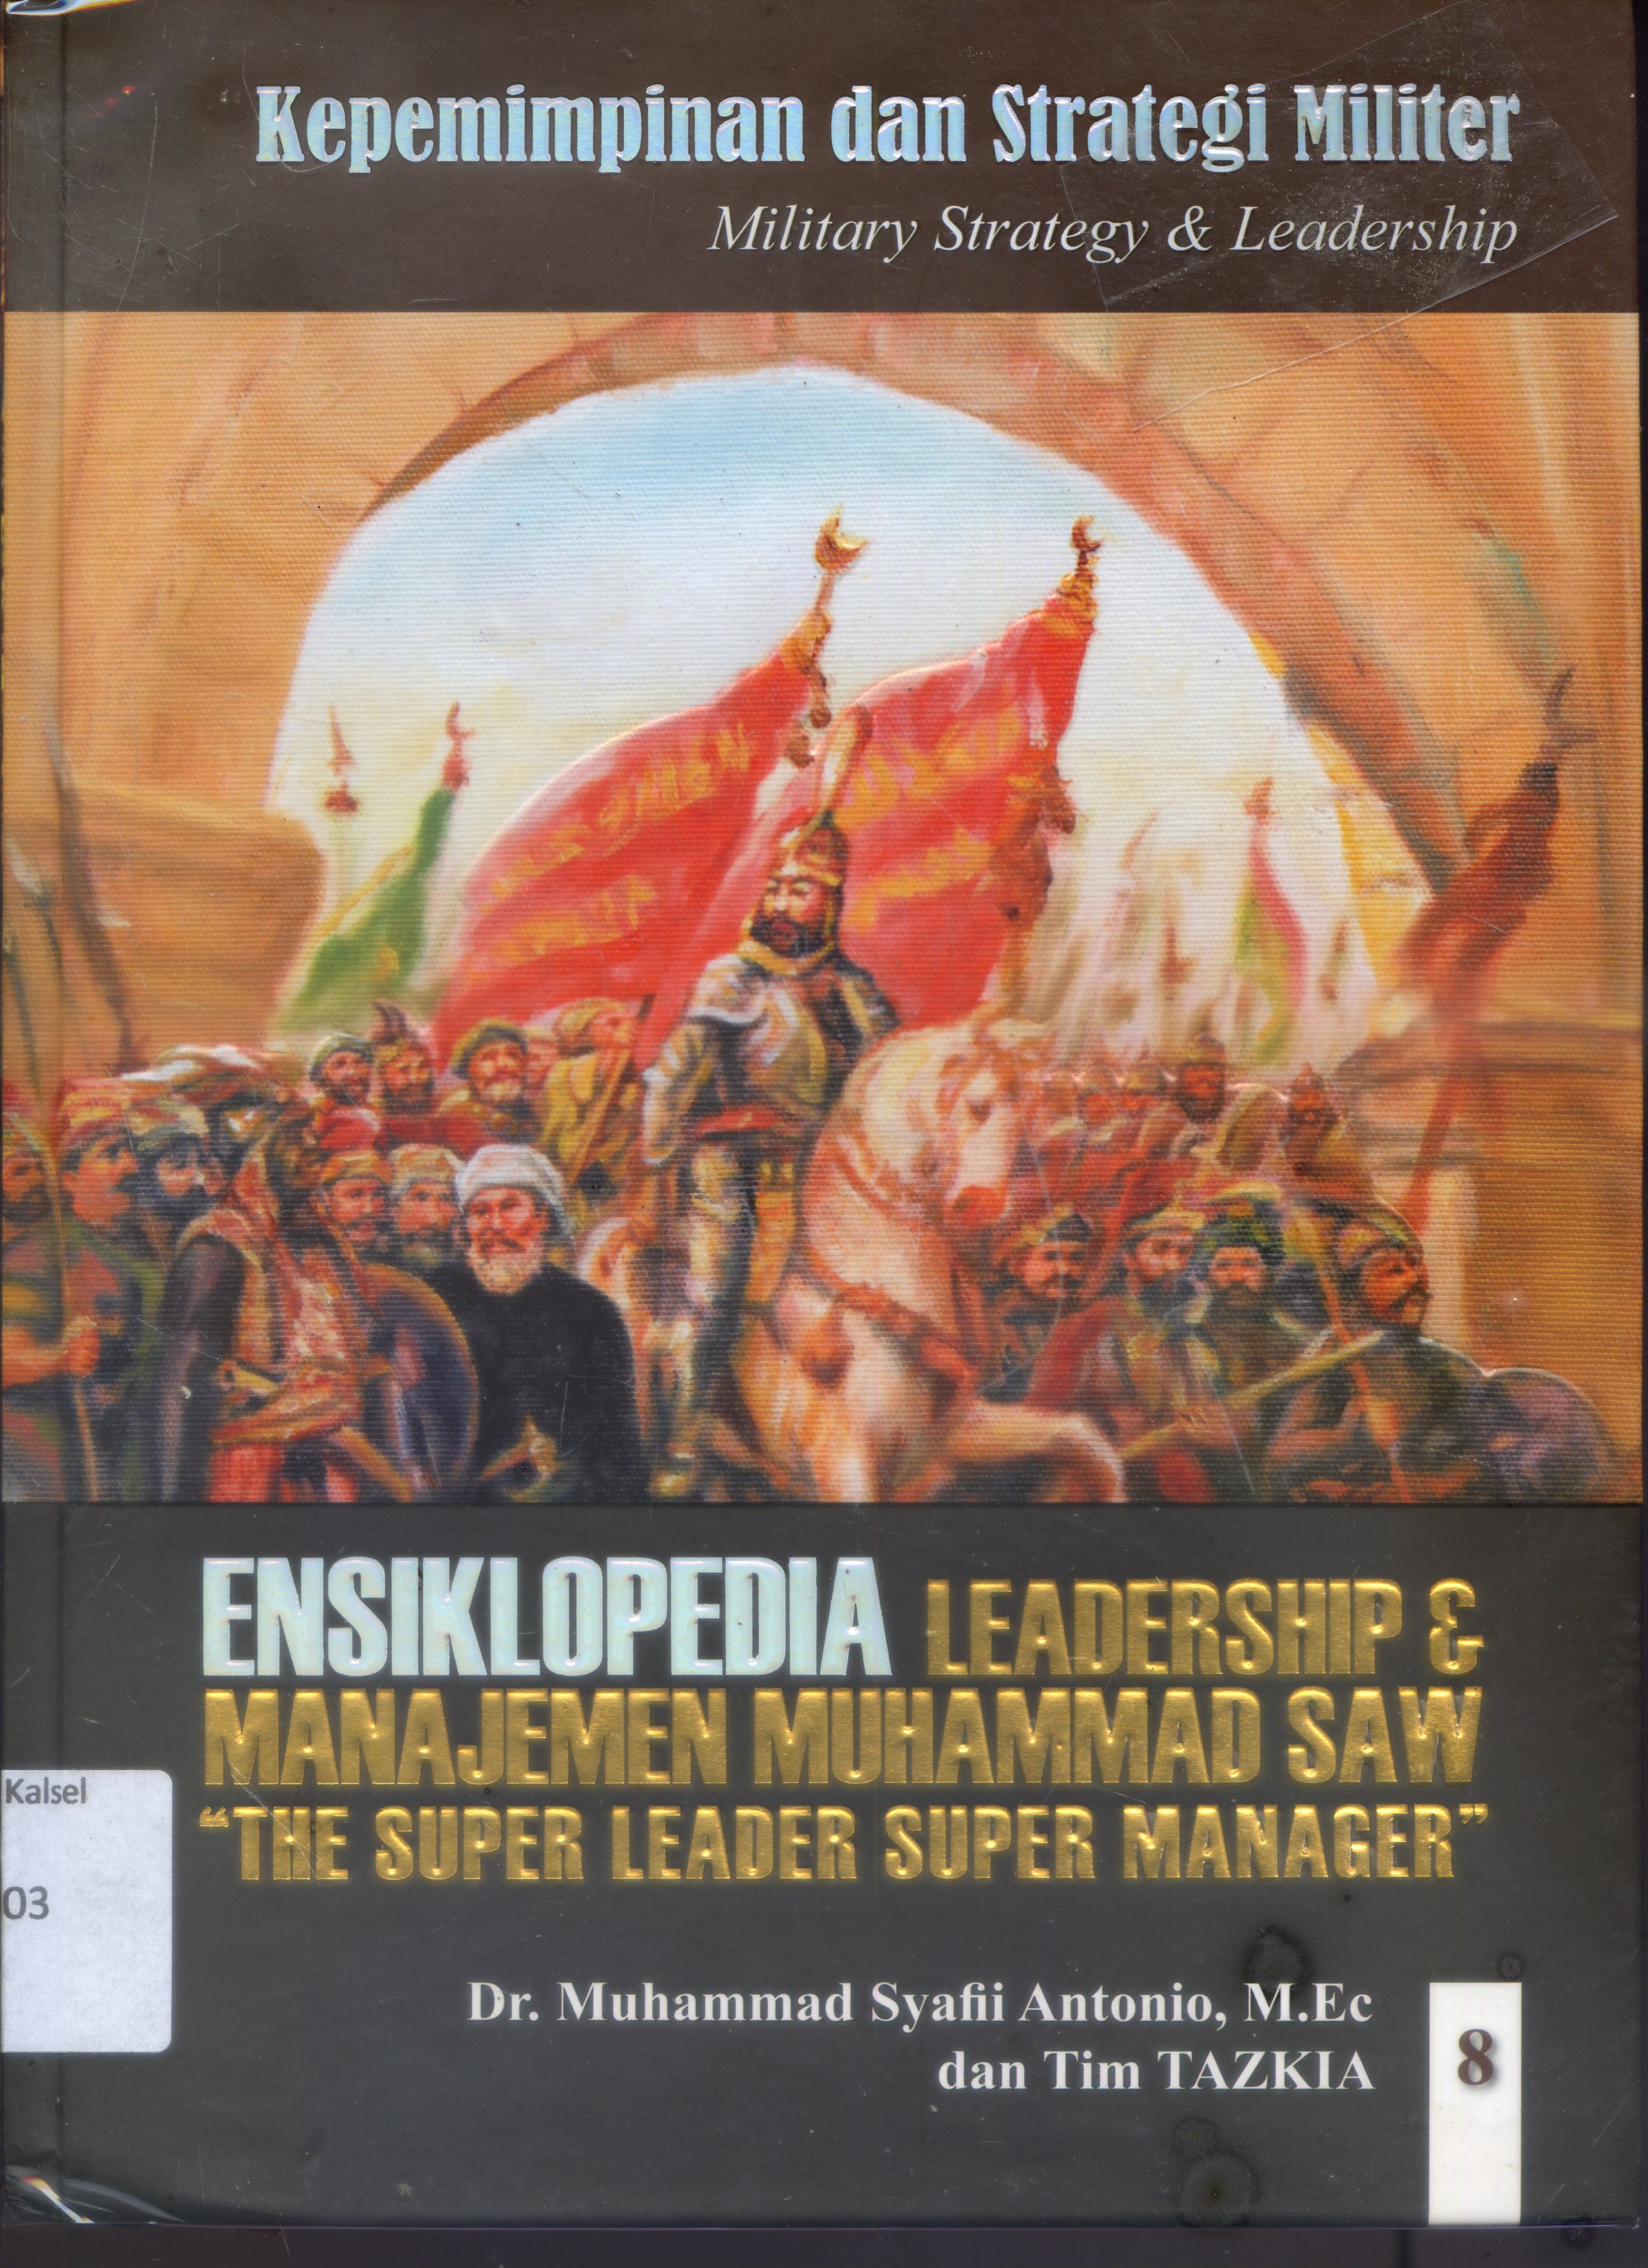 Ensiklopedia Leadership & Manajemen Muhammad SAW " The super leader super manager" 8 :  Kepemimpinan dan Strategi Militer  (Military Leadership & Strategy)